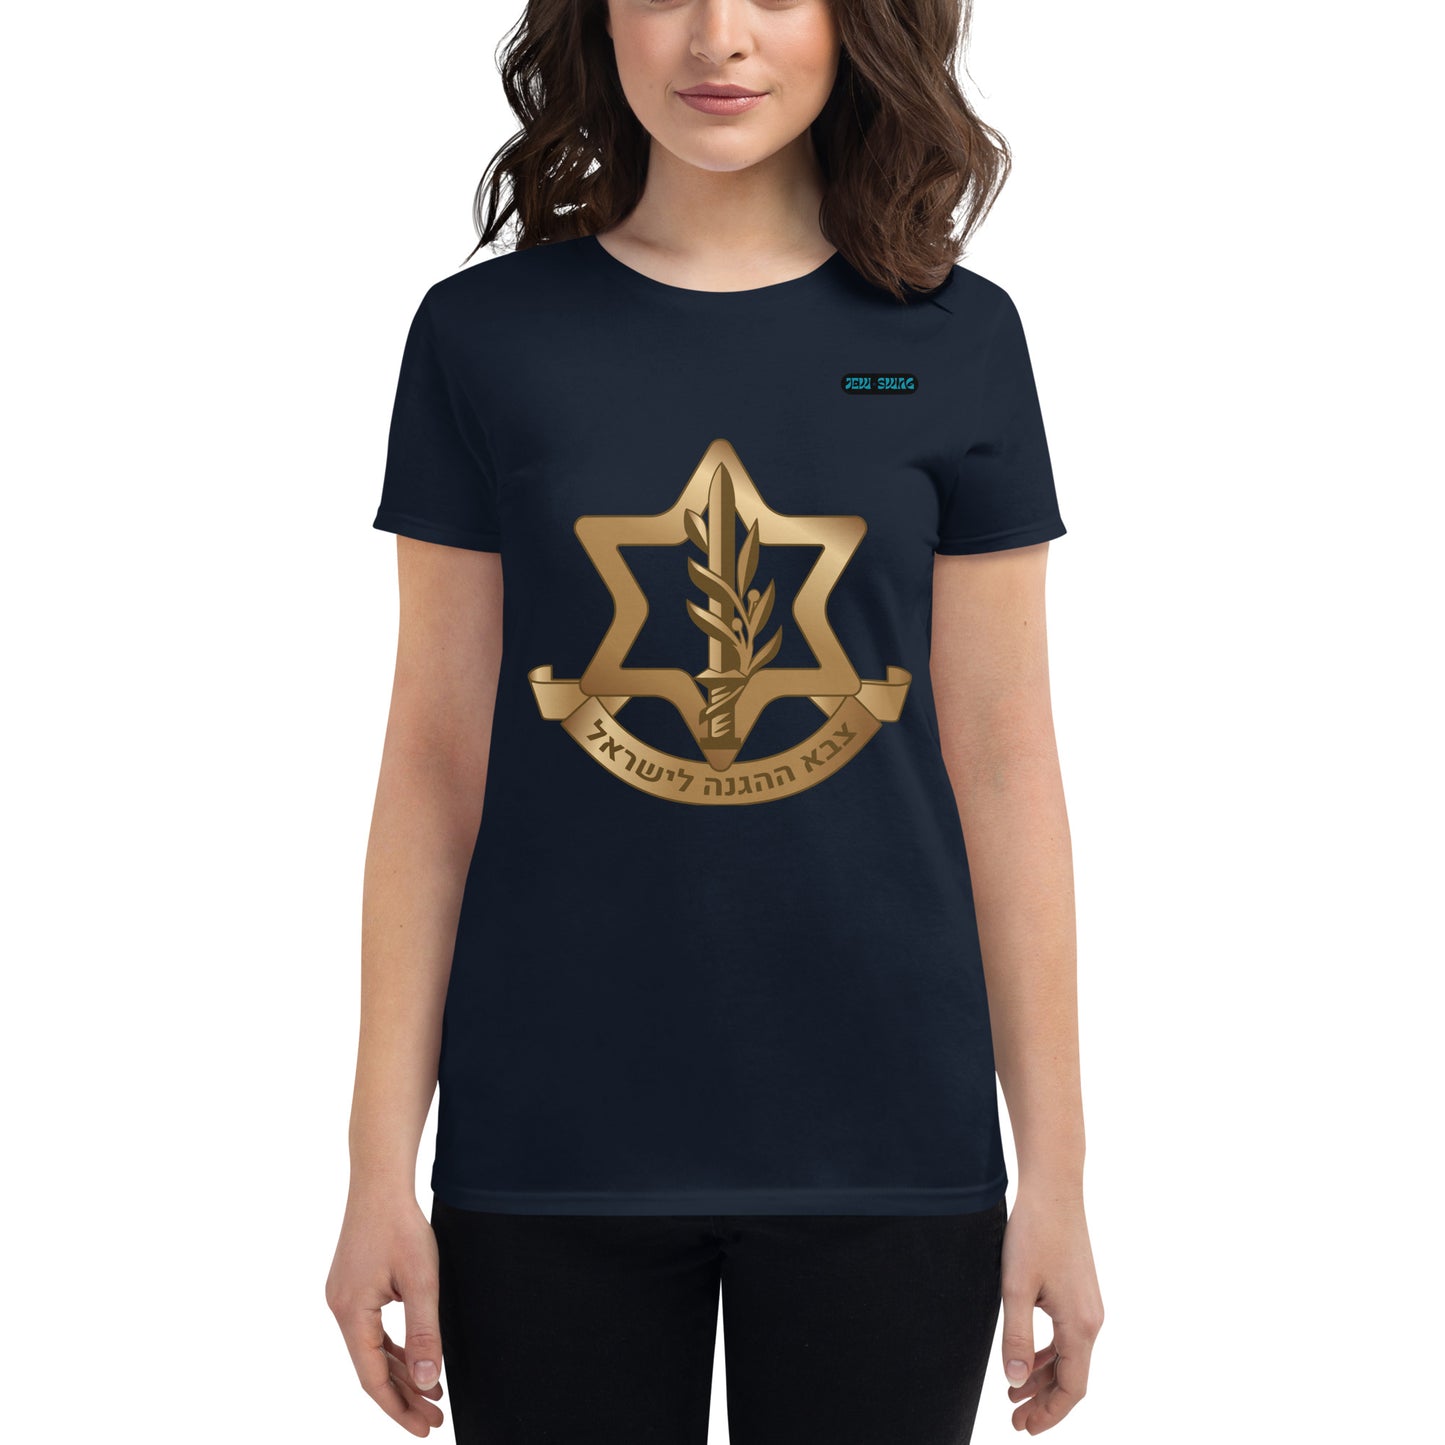 IDF x Jew Swag - Women's short sleeve t-shirt